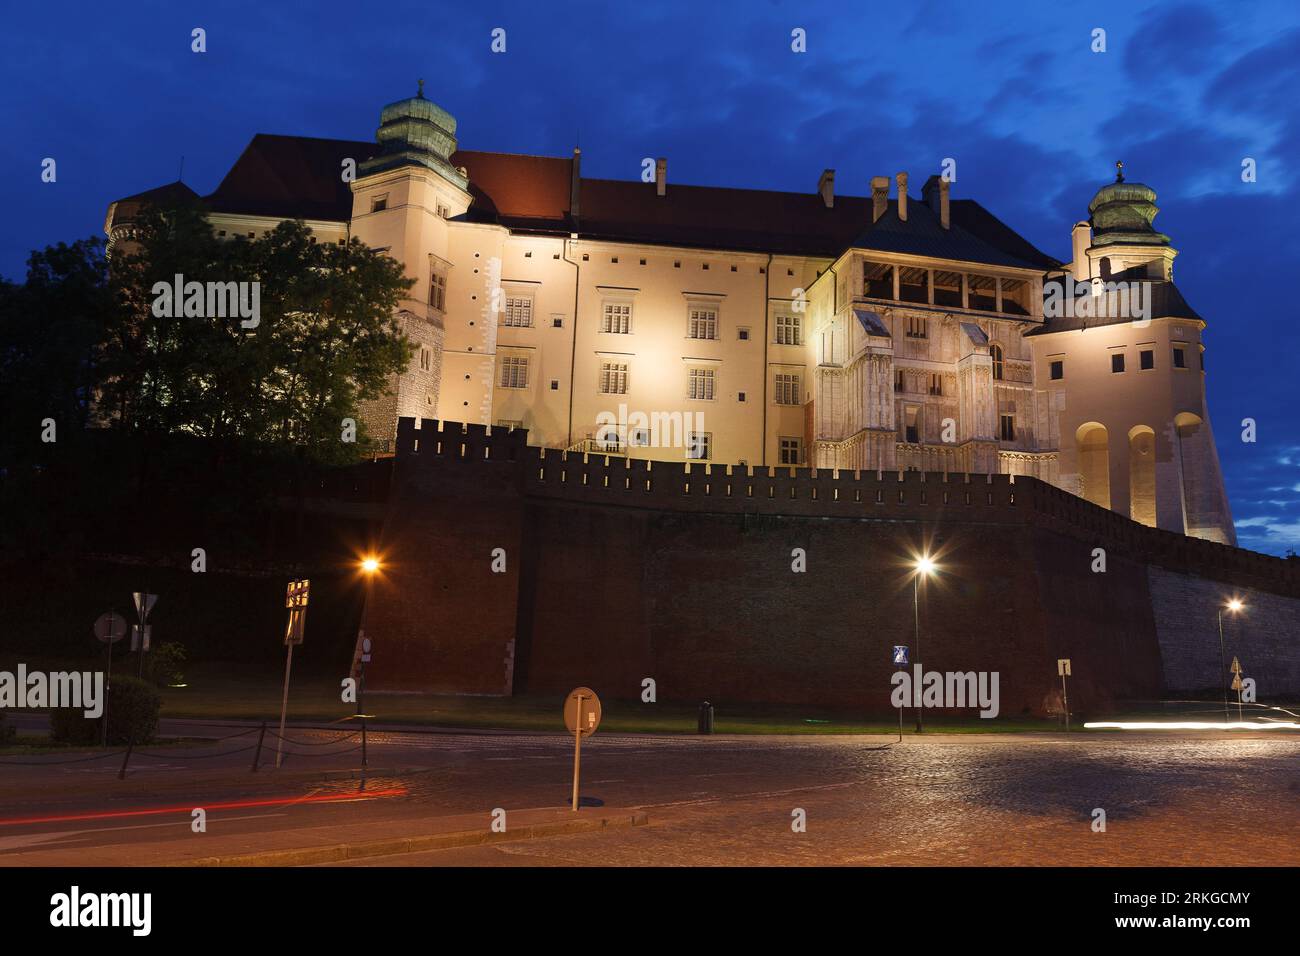 Une vue imprenable sur le château royal de Wawel à Cracovie, en Pologne illuminé brillamment la nuit Banque D'Images